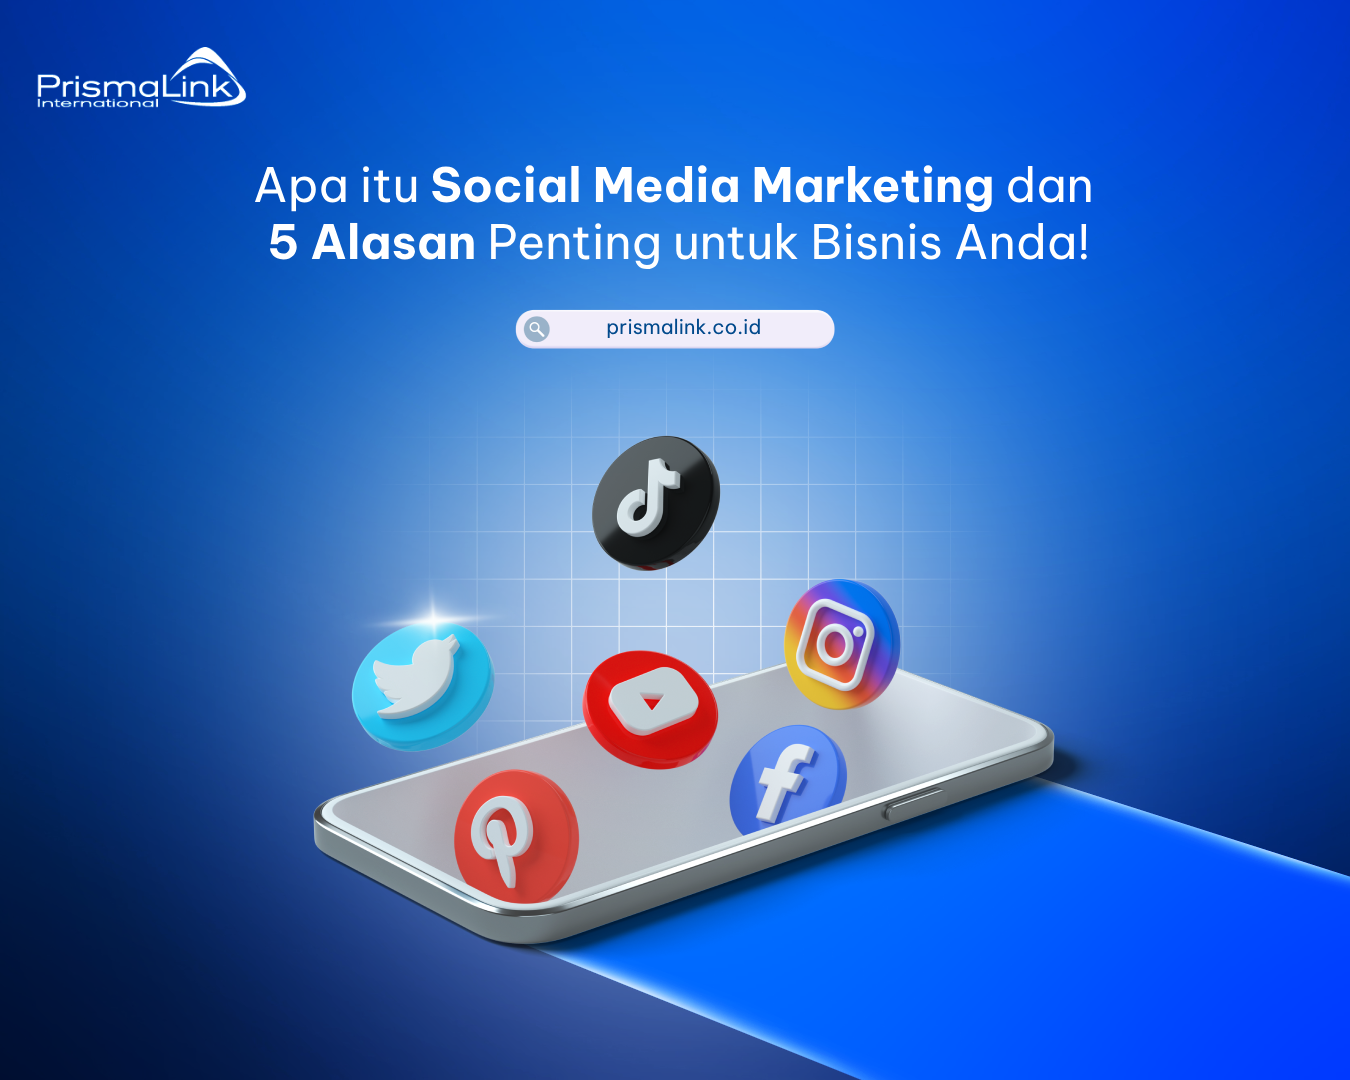 apa itu social media marketing